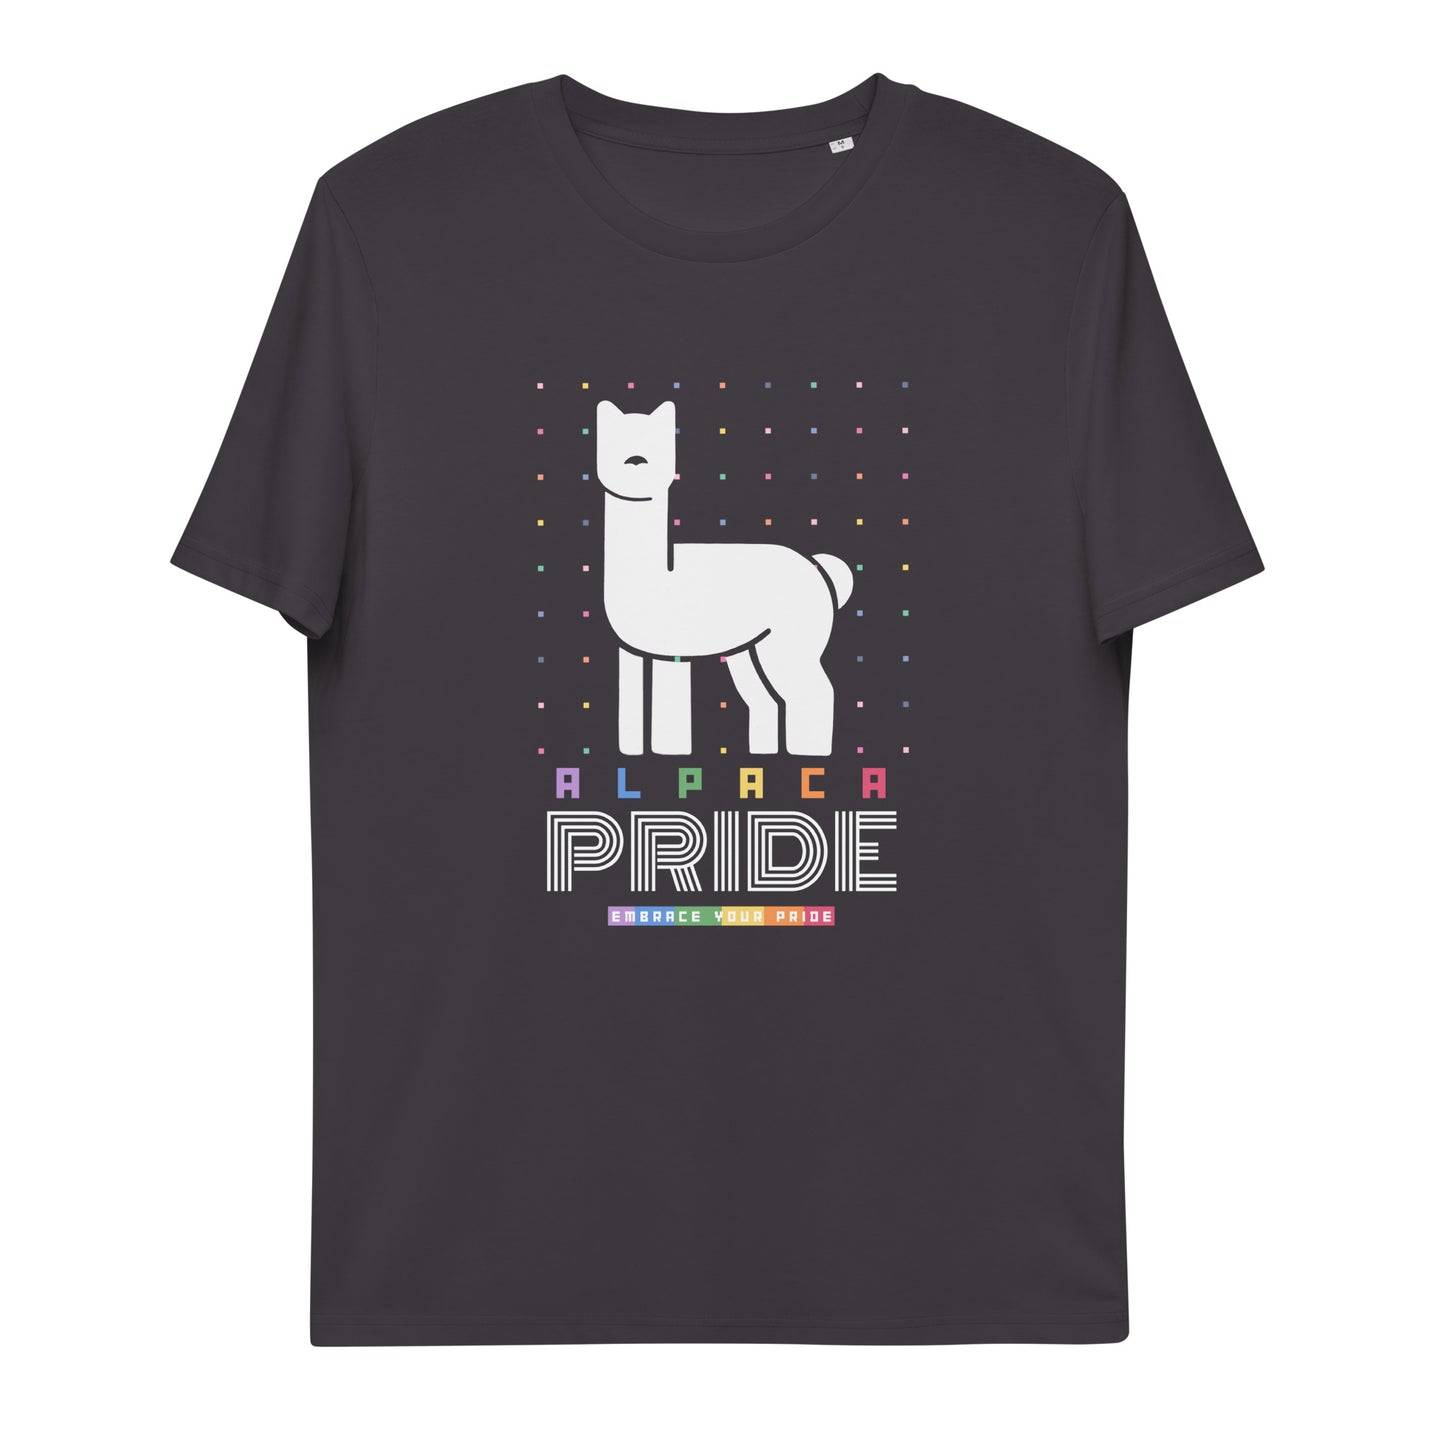 Embrace Your Pride Unisex Organic Cotton T-shirt